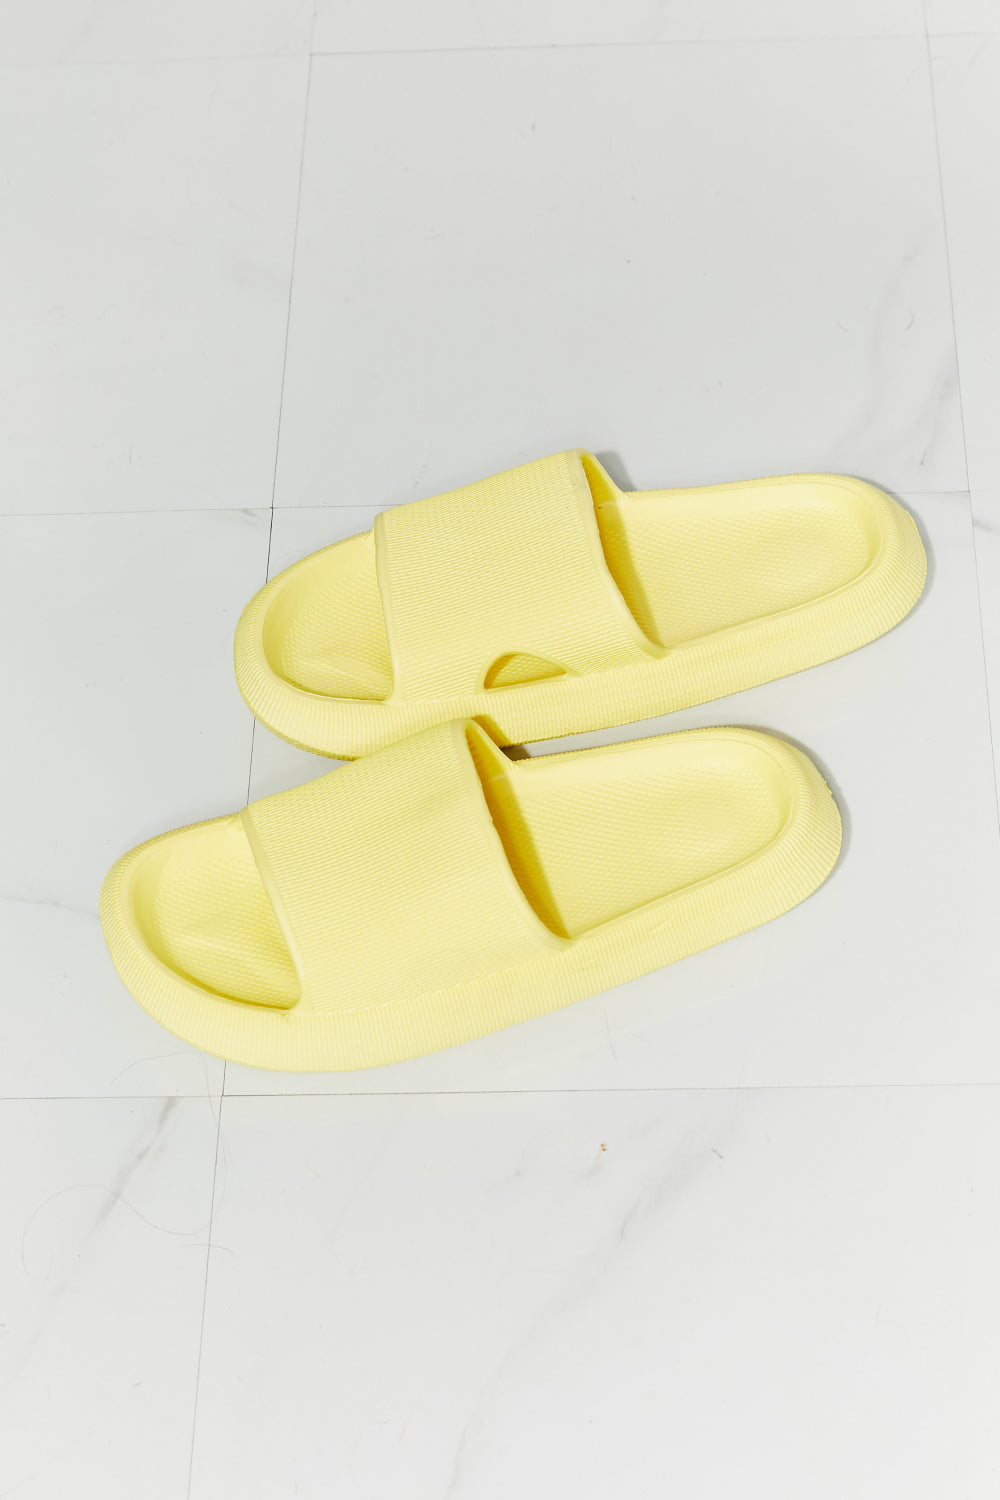 Arla Open Toe Slide in Yellow